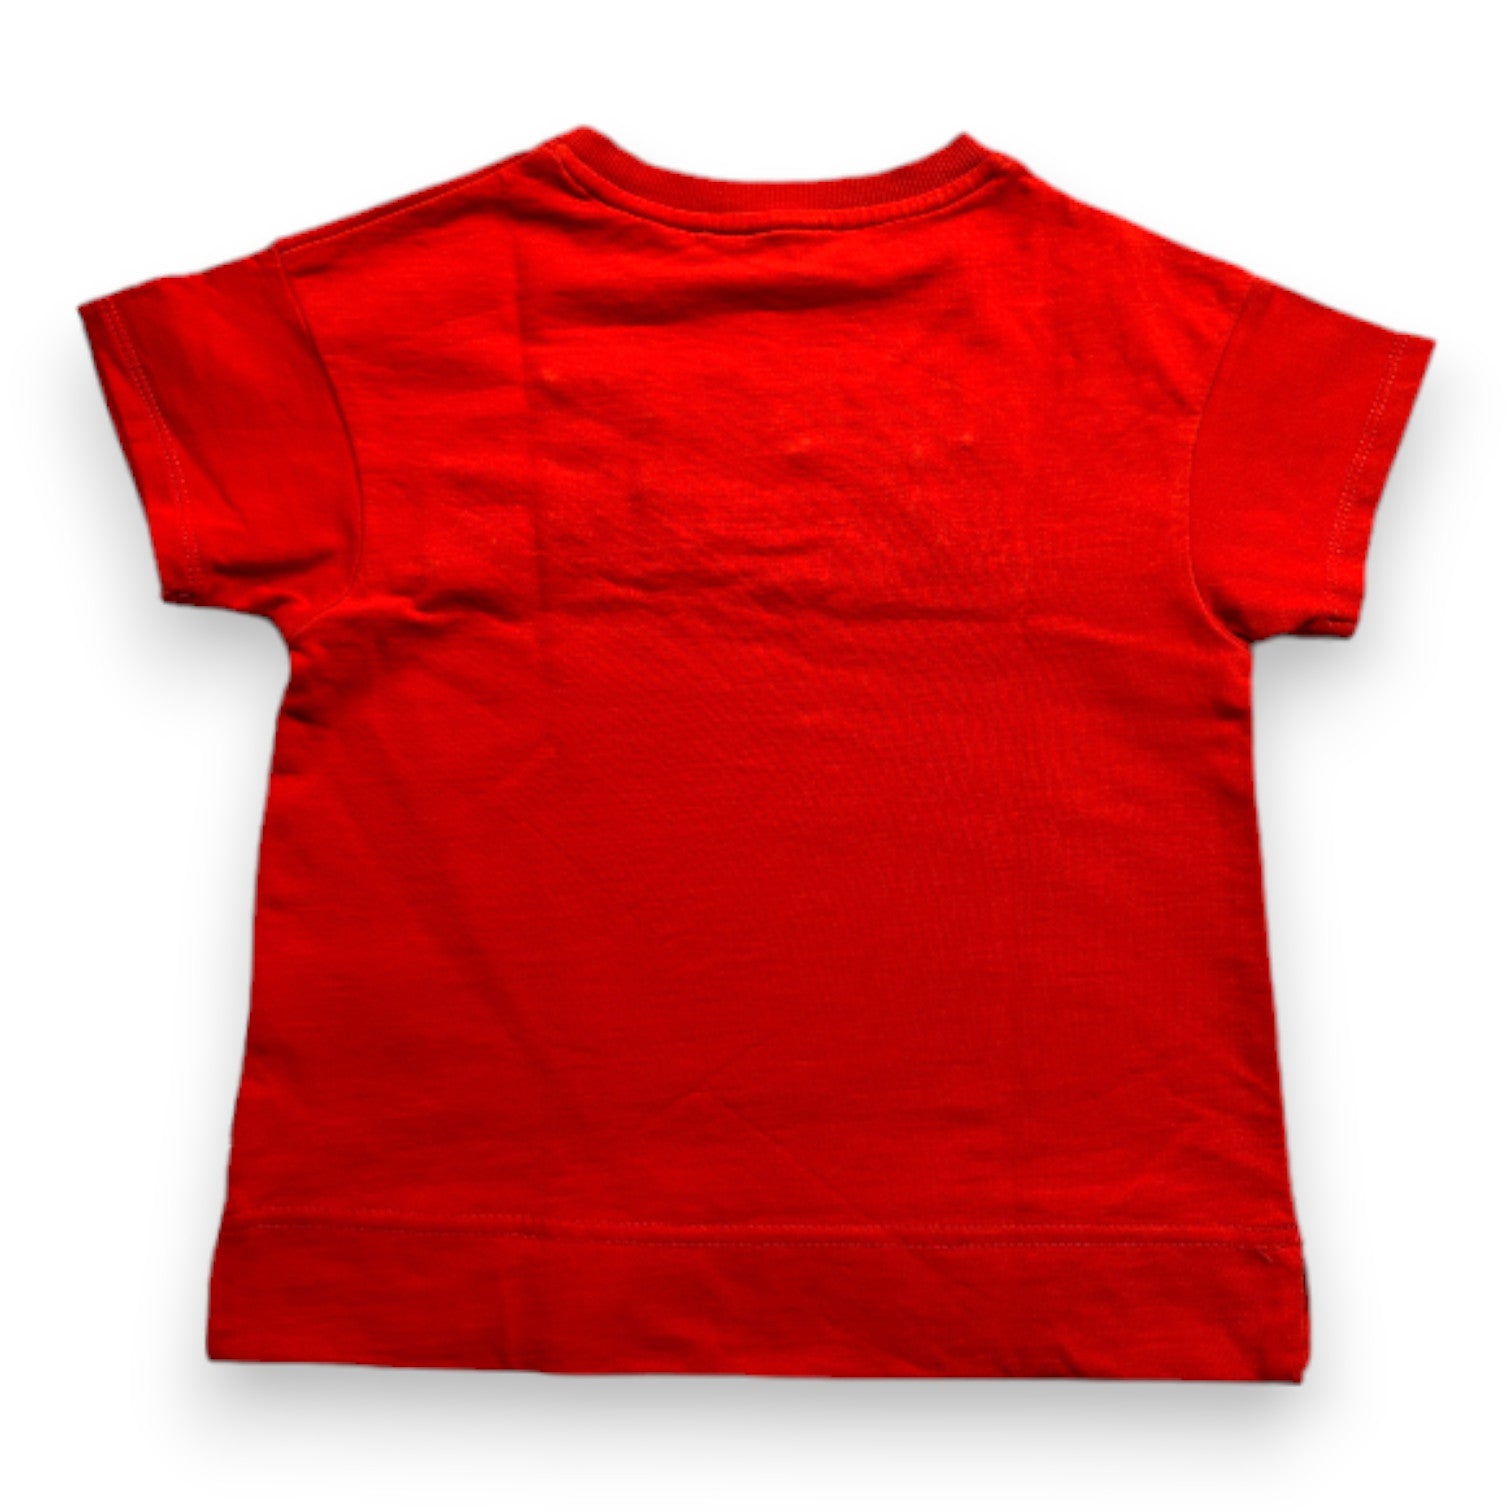 MARC JACOBS - T-shirt rouge à manches courtes avec broderies - 6 ans